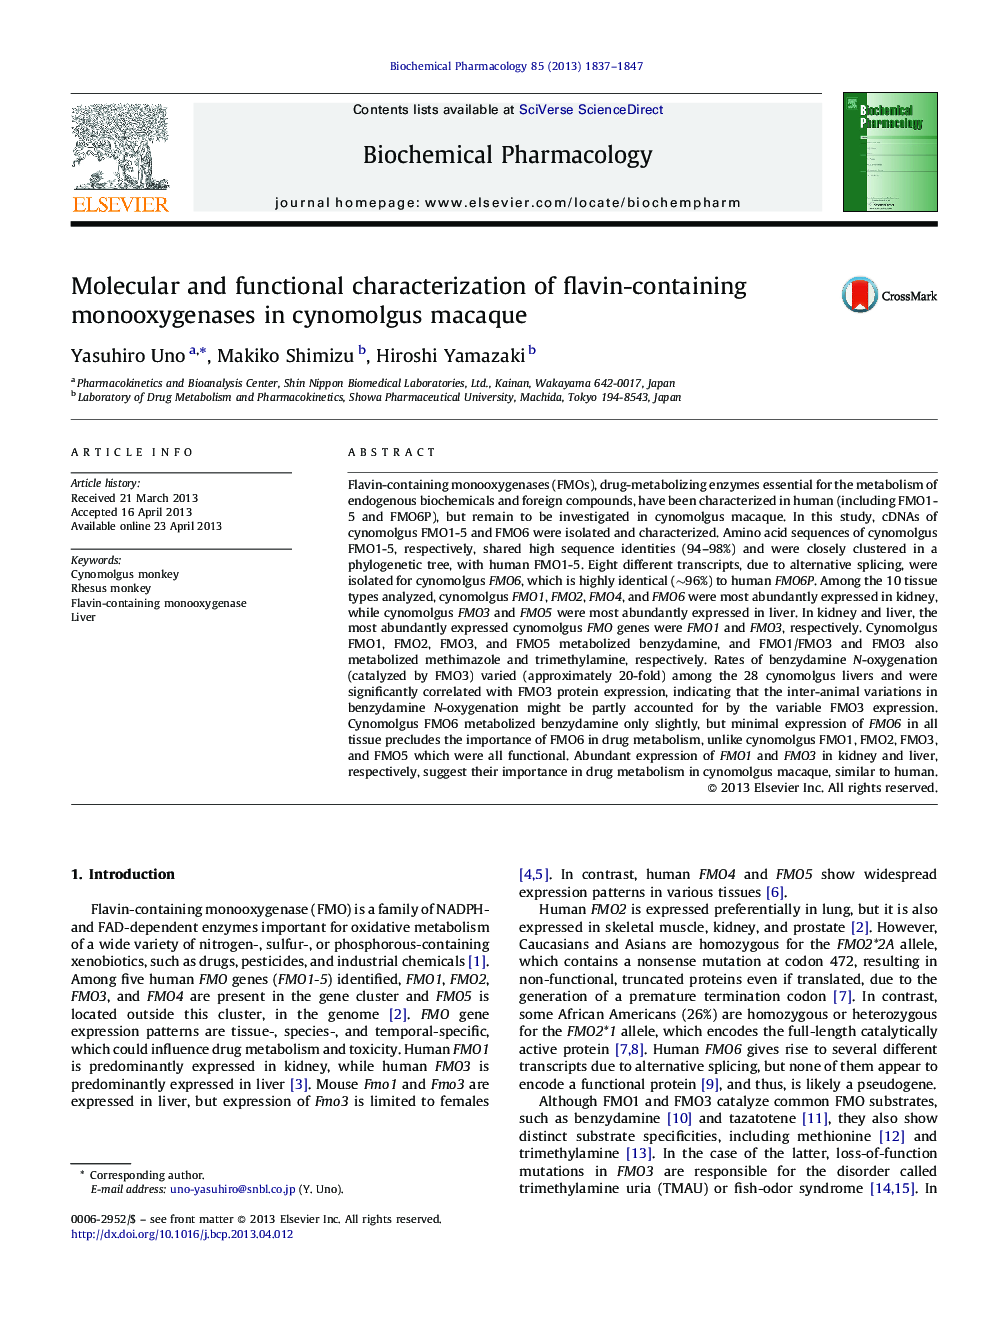 خصوصیات مولکولی و عملکردی مونواکسیژنازهای حاوی فلاوین در ماینک سینومولگاس 